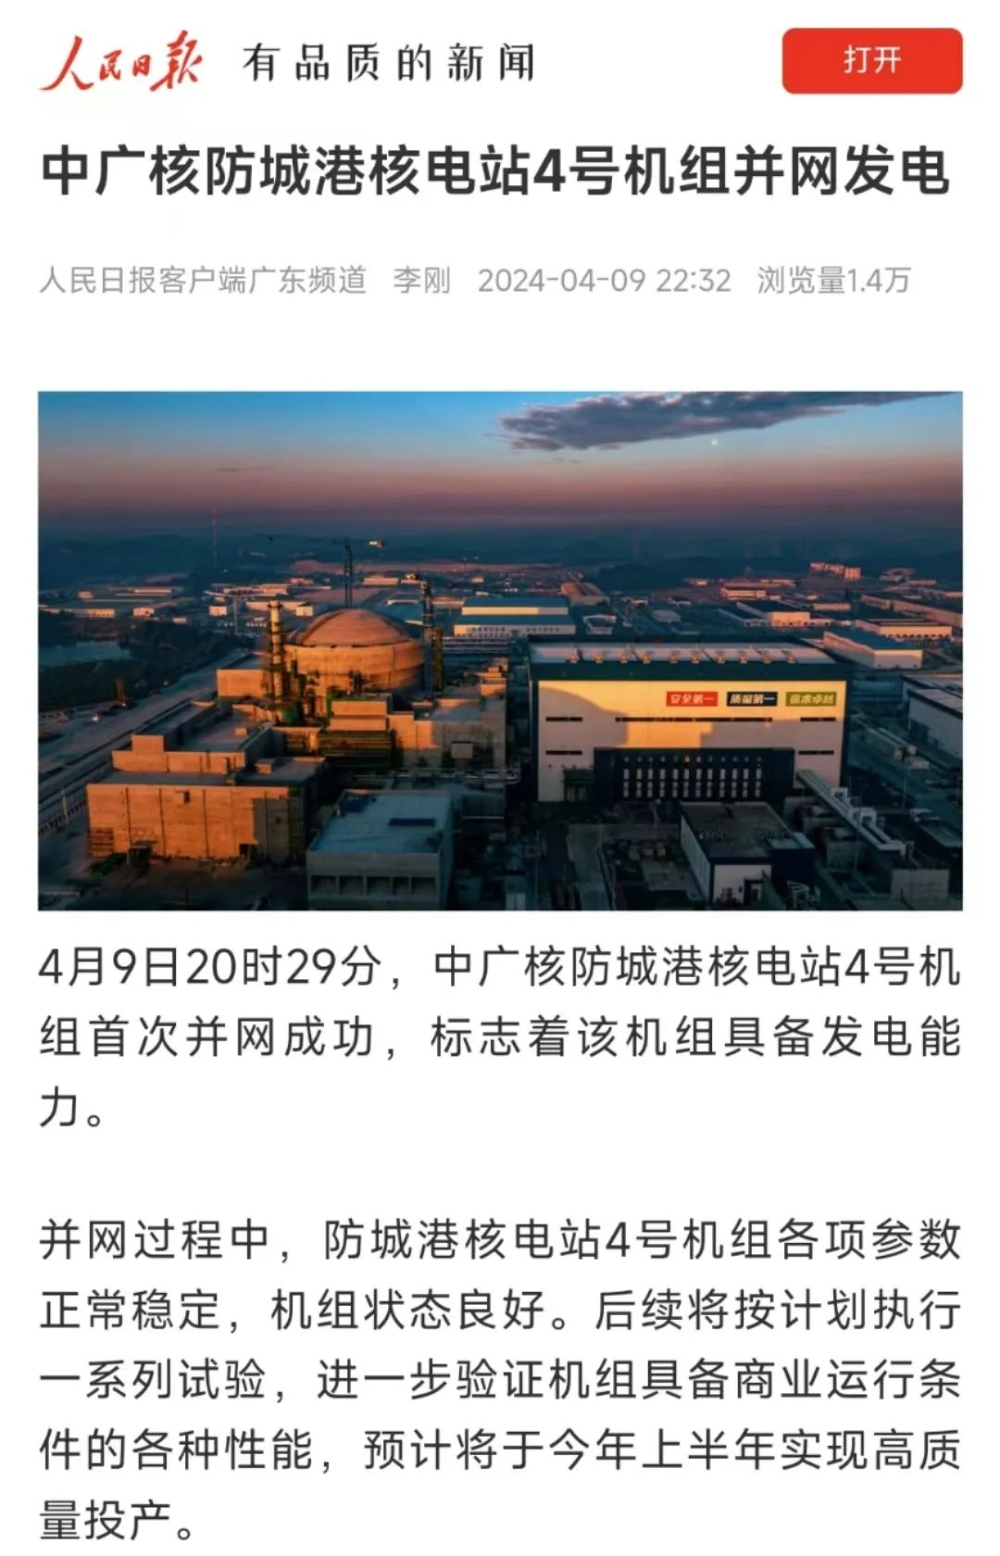 人民日报、新华社等主流媒体聚焦报道防城港4号机组首次并网发电-2